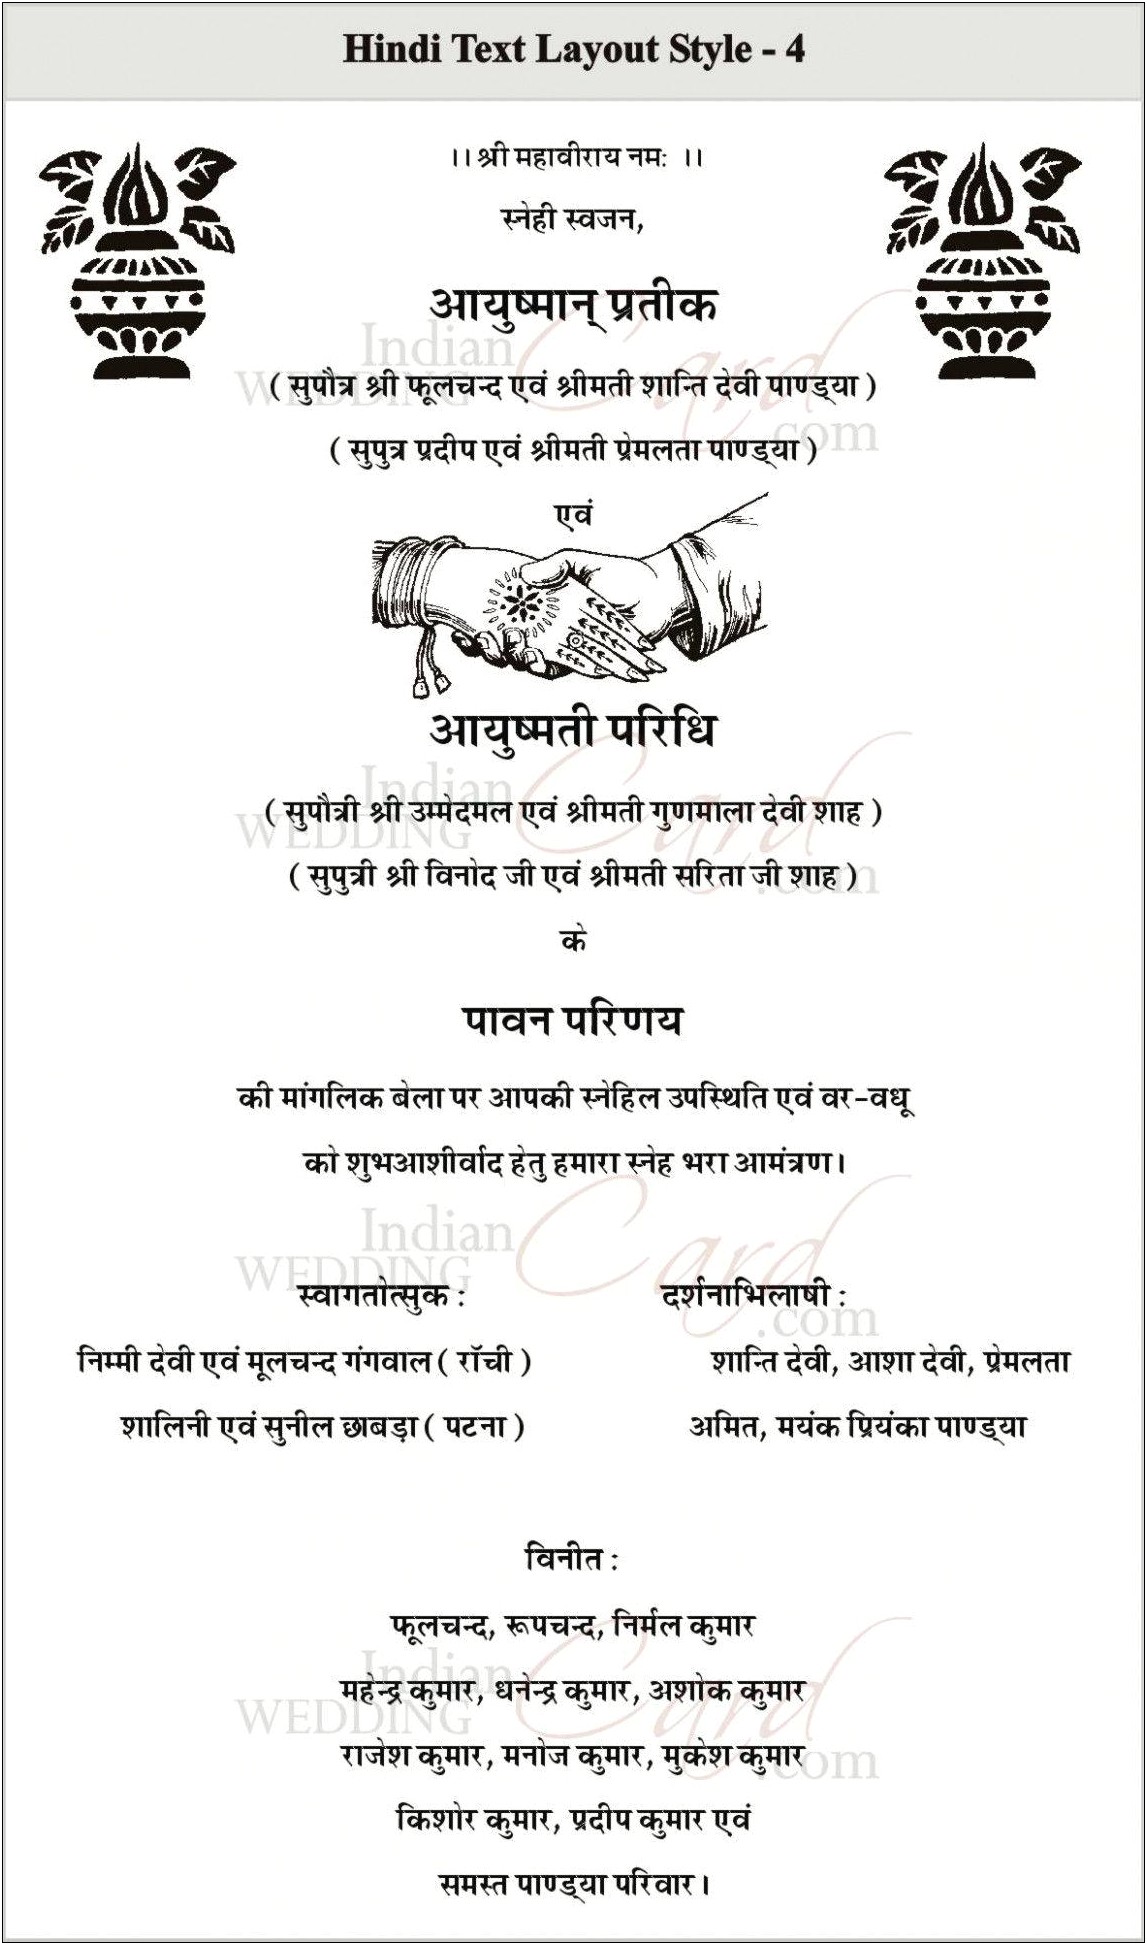 Hindu Wedding Invitation Card In Hindi